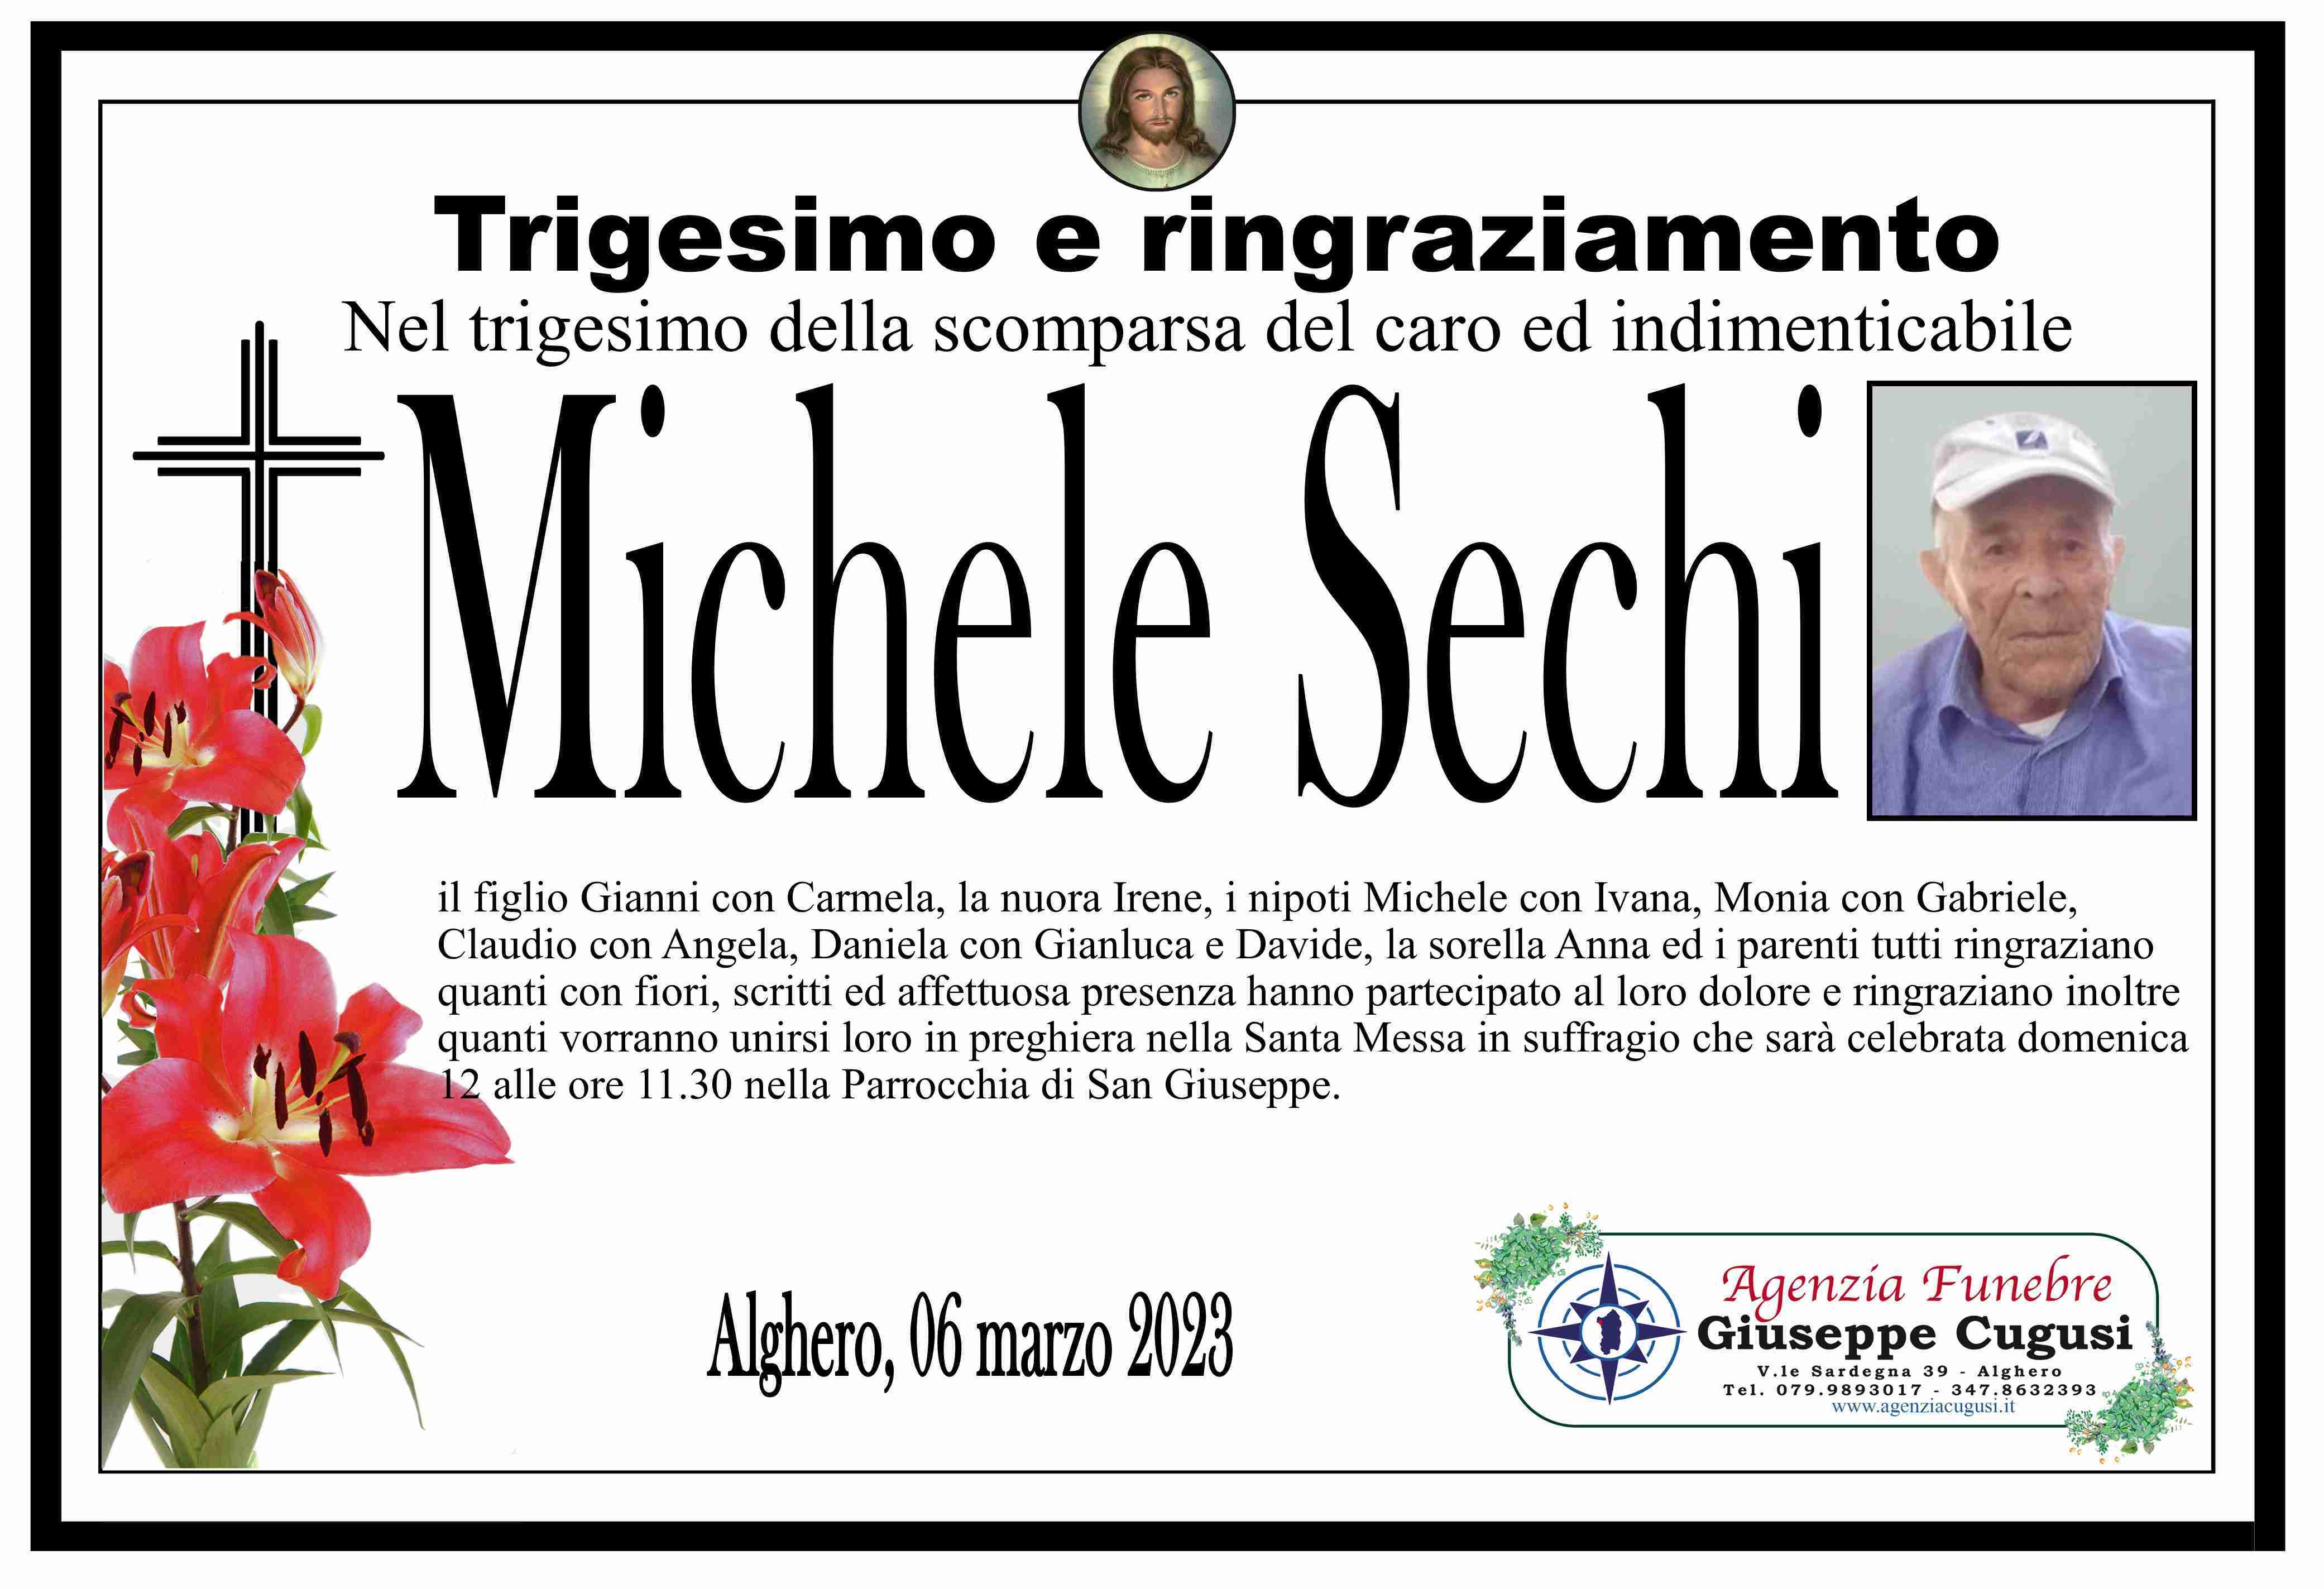 Michele Sechi